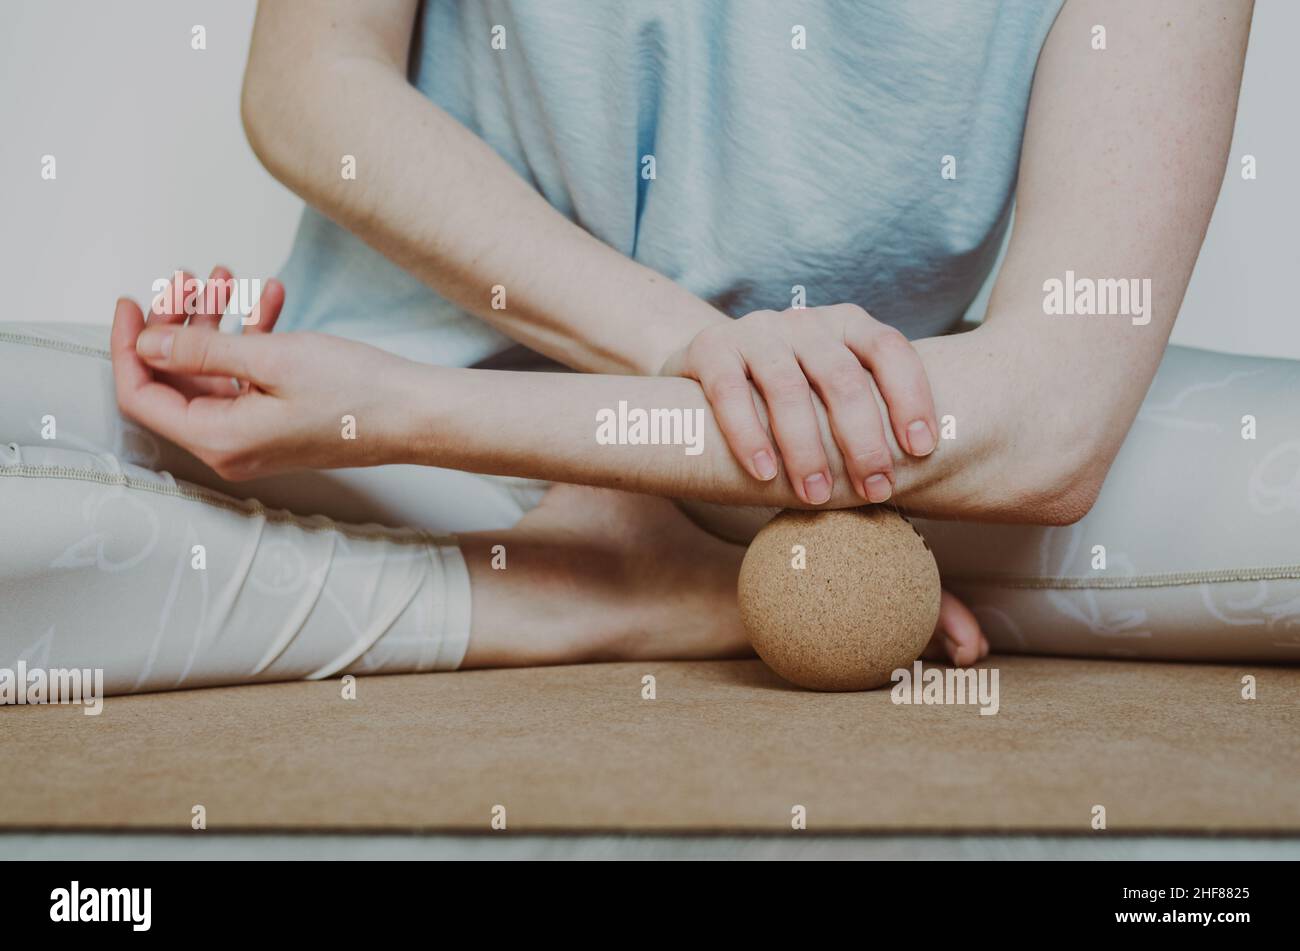 Unterarmmuskulatur myofasziale Freisetzung mit großer Kork-Massagekugel auf Kork-Yoga-Matte. Konzept: Selbstversorgung zu Hause Stockfoto